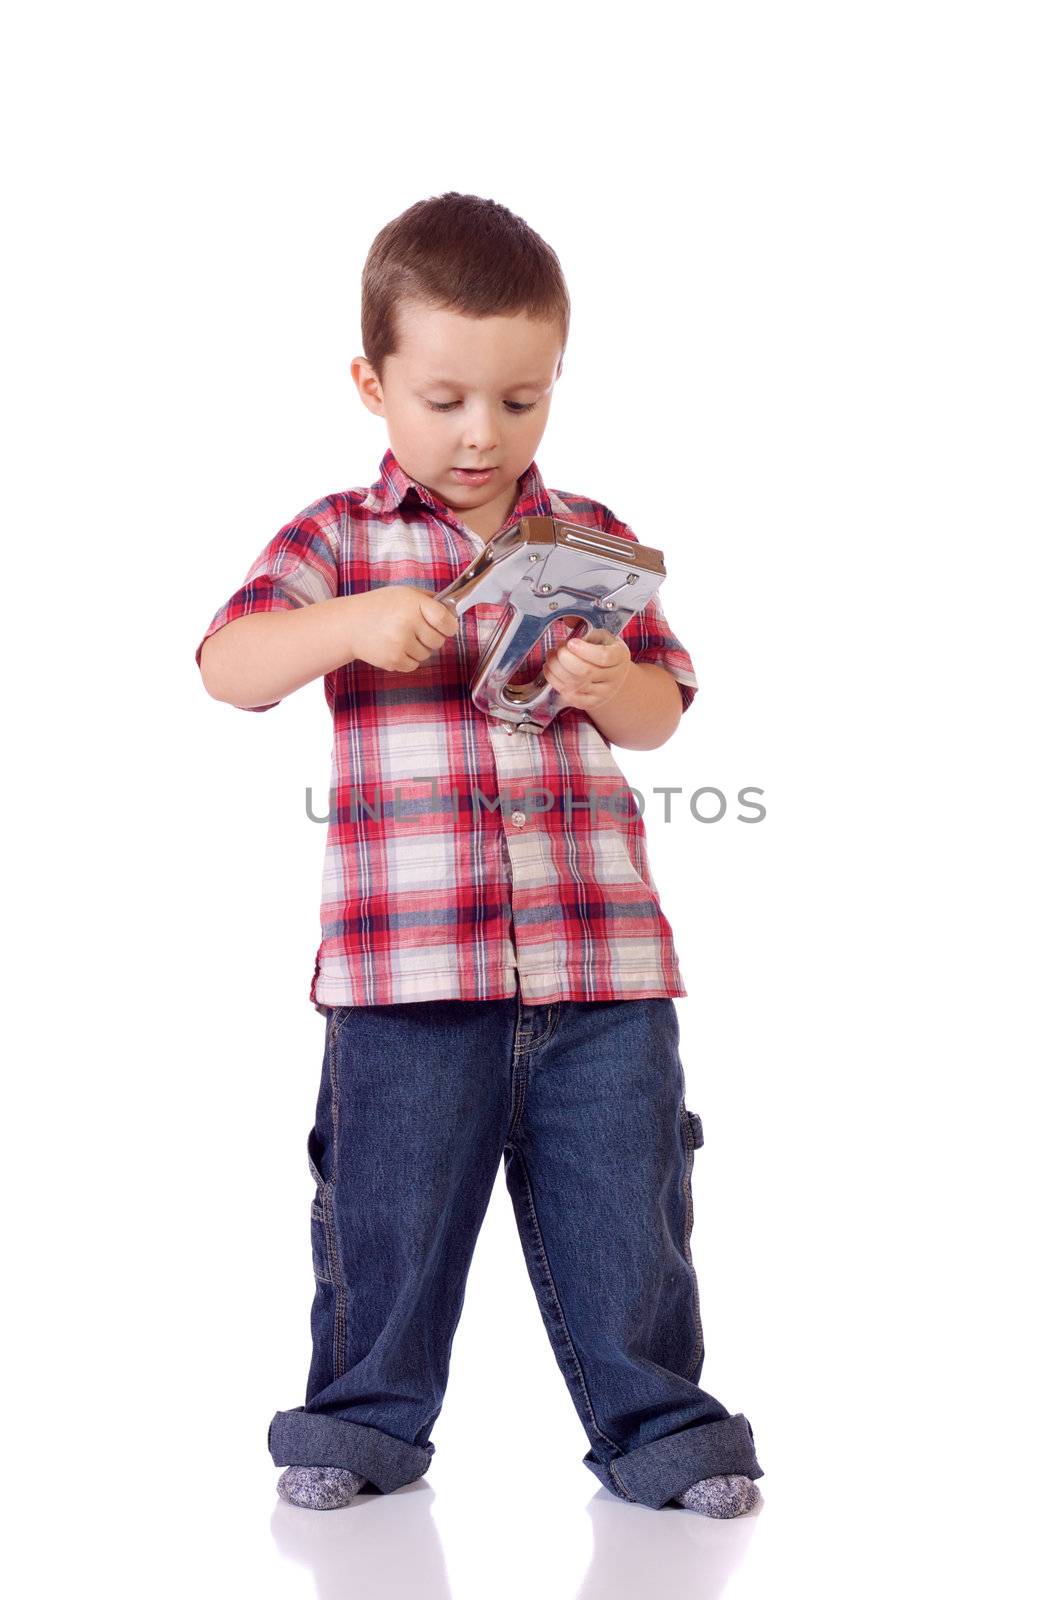 Cute little boy with a stapler